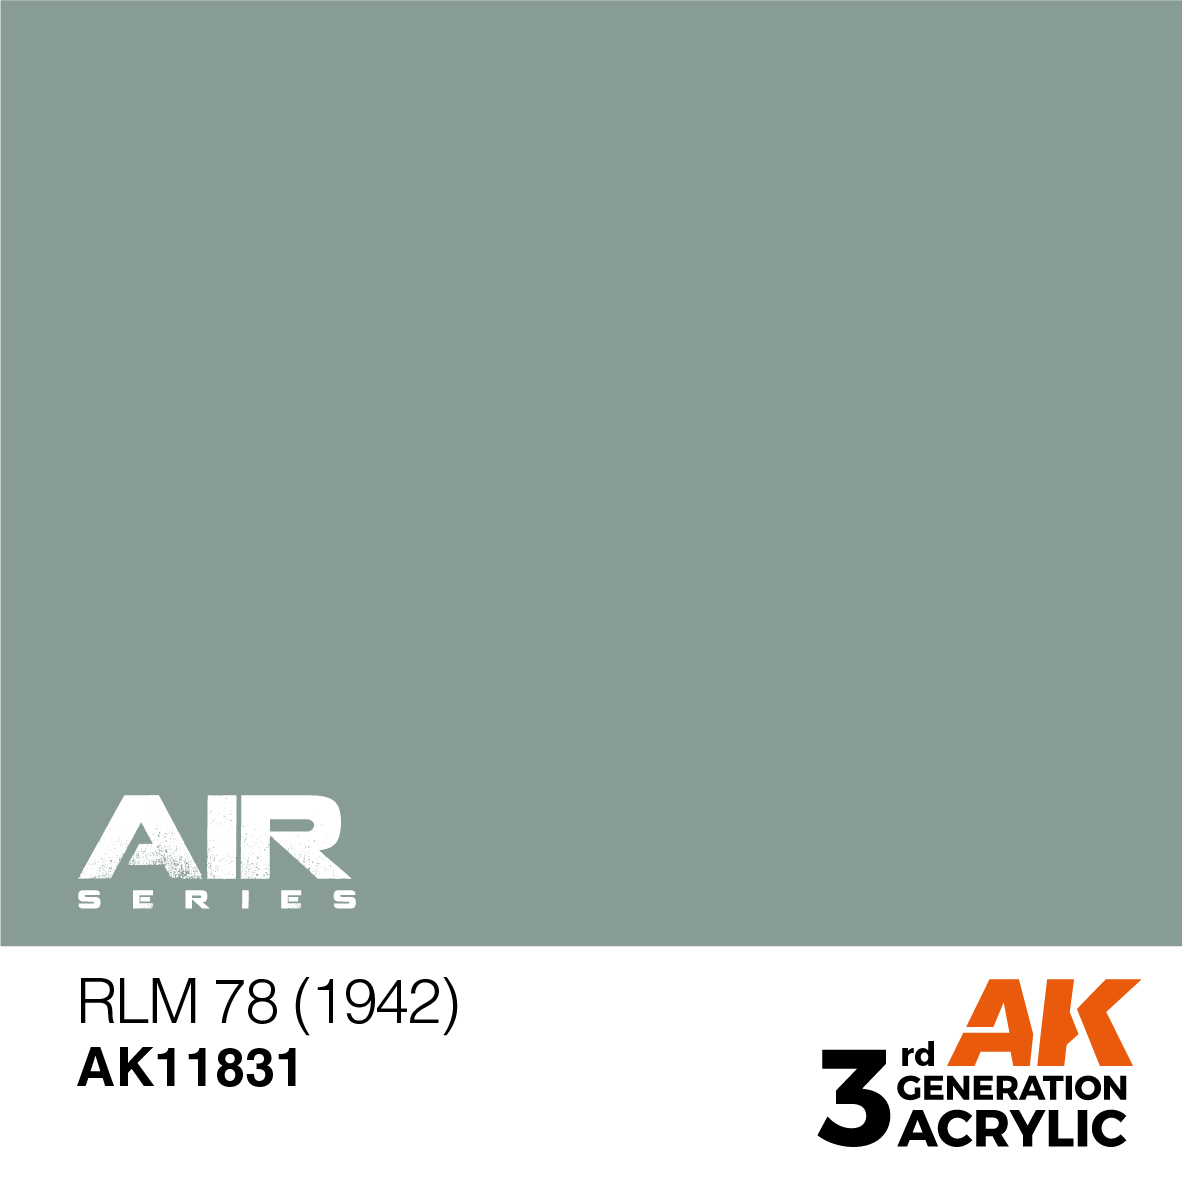 RLM 78 (1942) – AIR